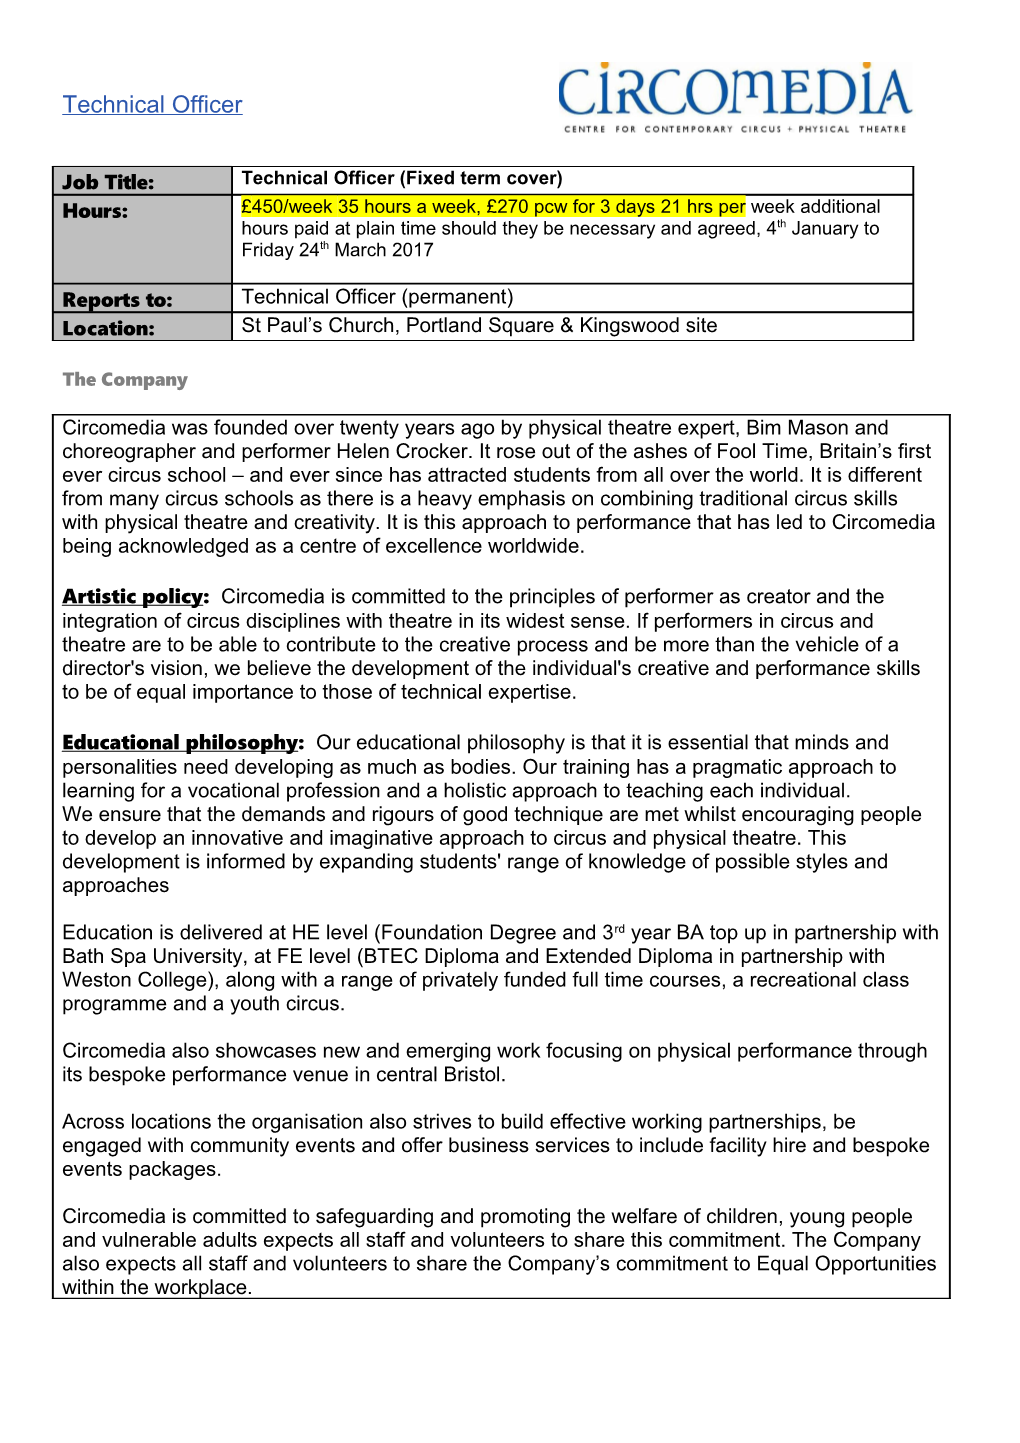 Circomedia Job Description